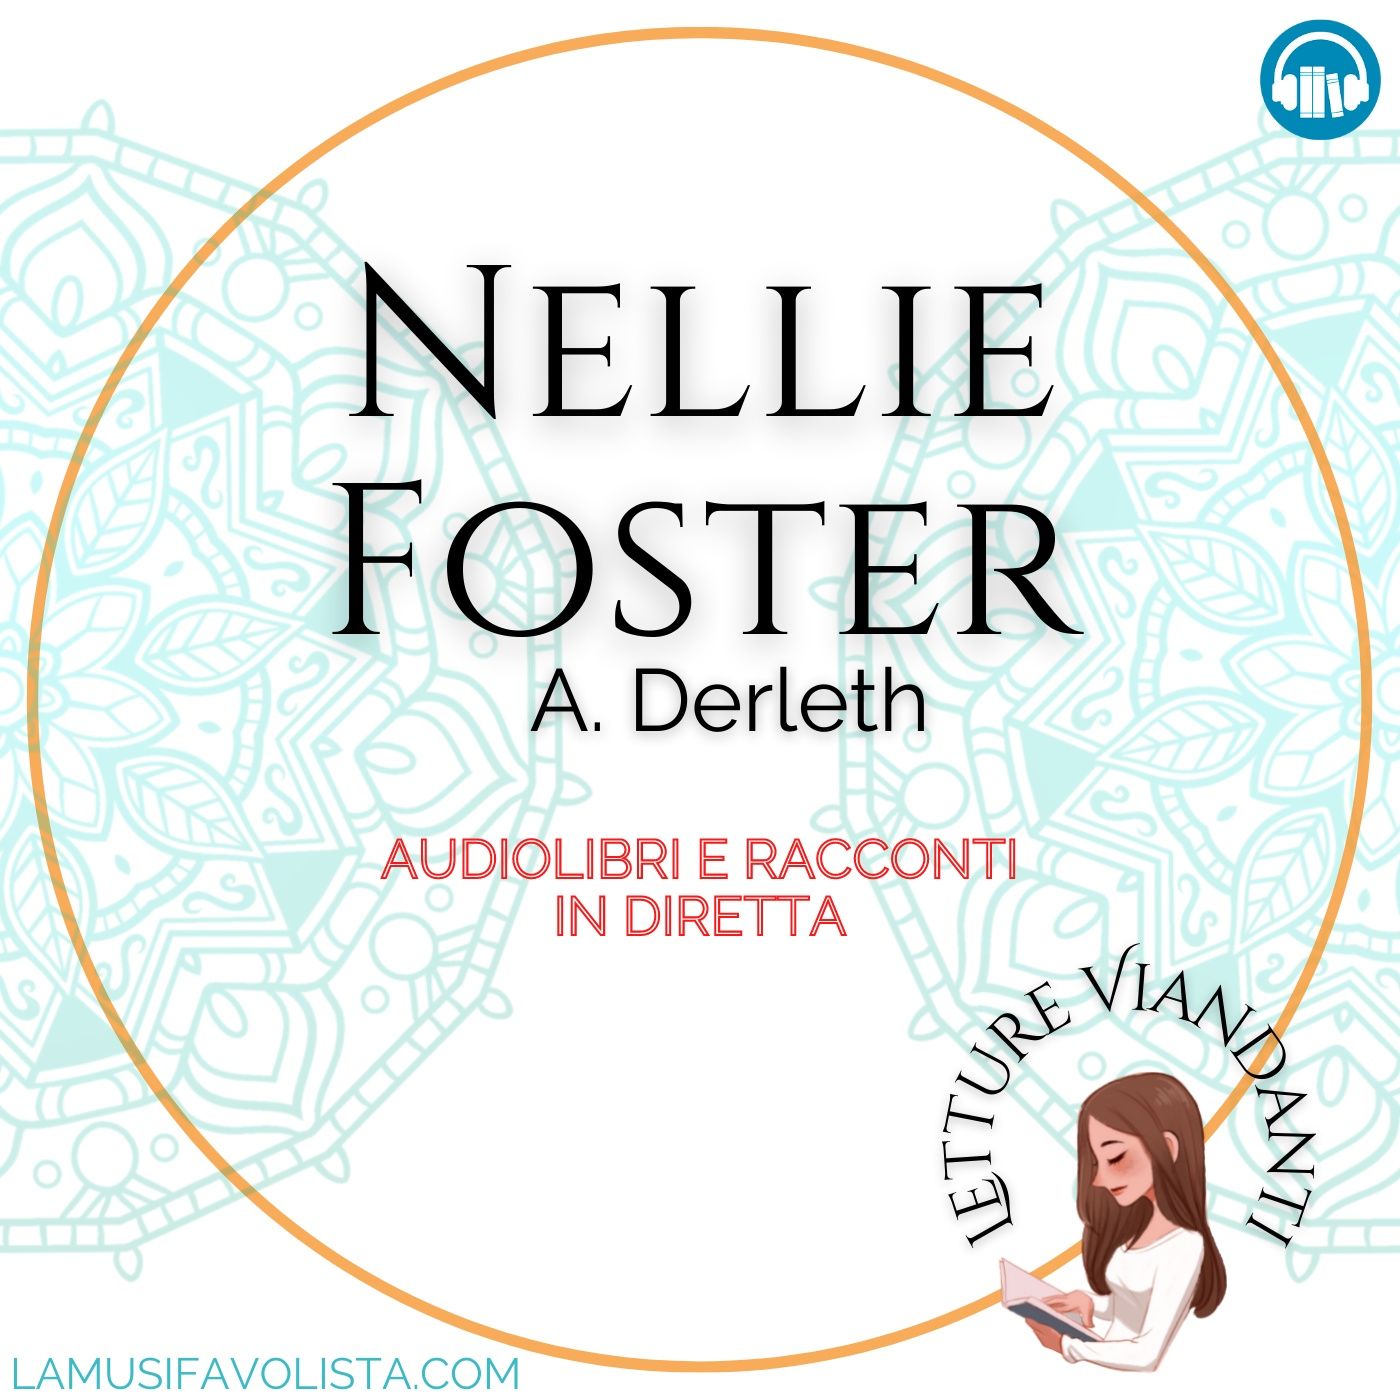 NELLIE FOSTER - A. Derleth • LETTURE VIANDANTI